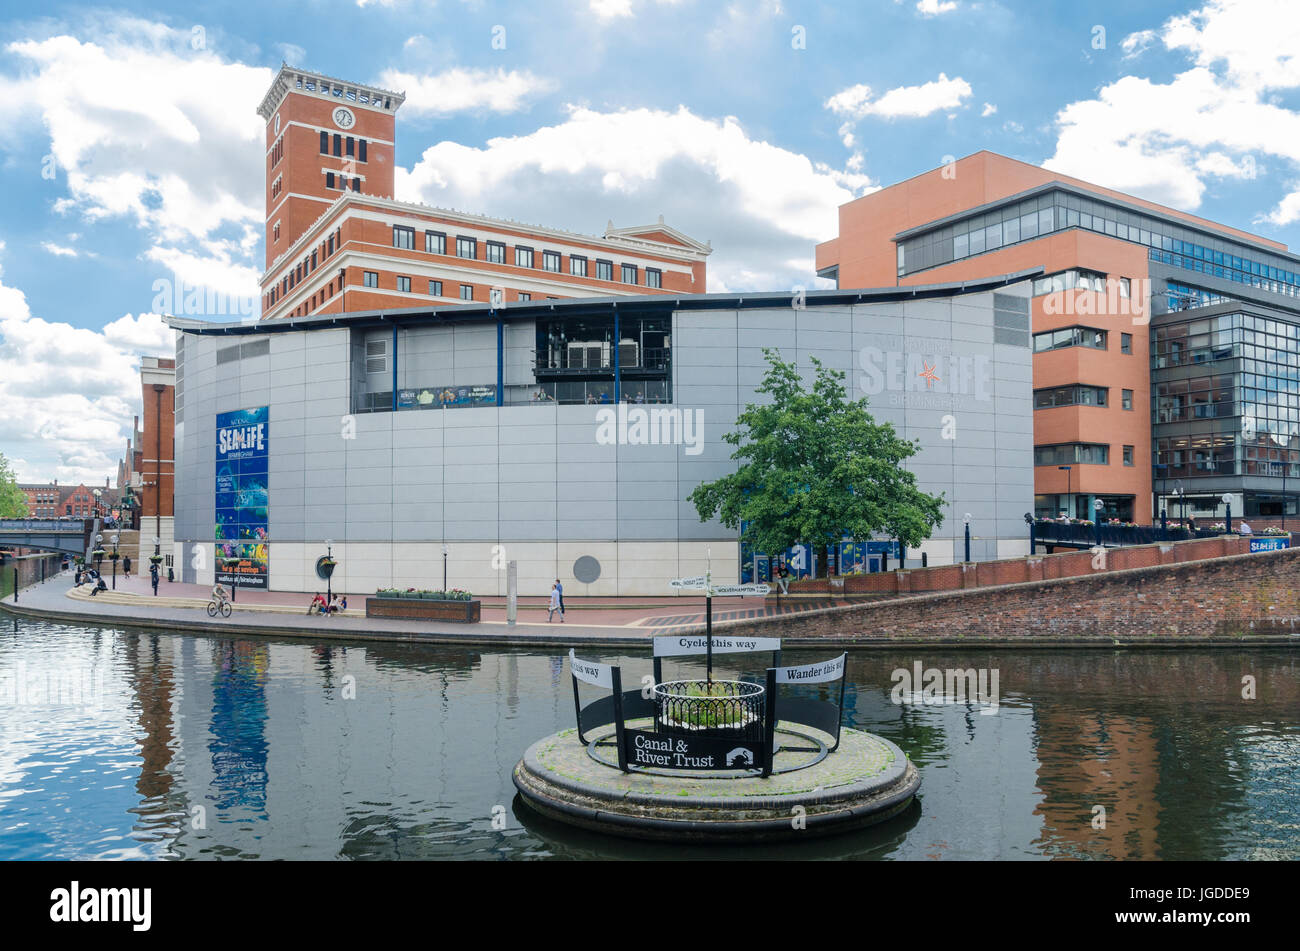 Le Sea Life Centre par le canal qui traverse à Birmingham Brindley Place Banque D'Images